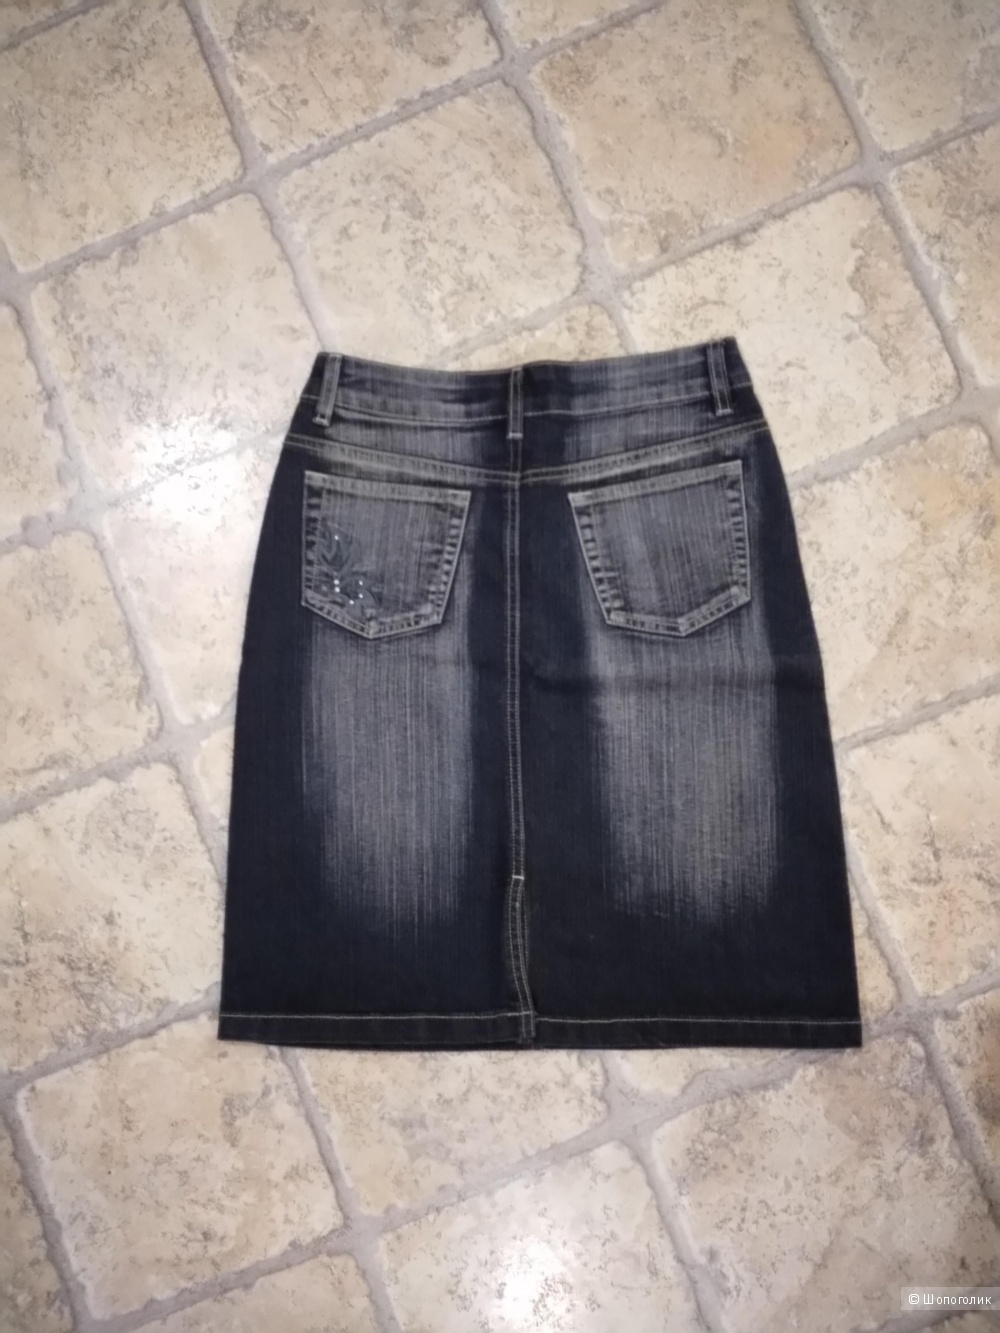 Чёрная джинсовая юбка - карандаш от J.R.K.C. wear  26 размера.